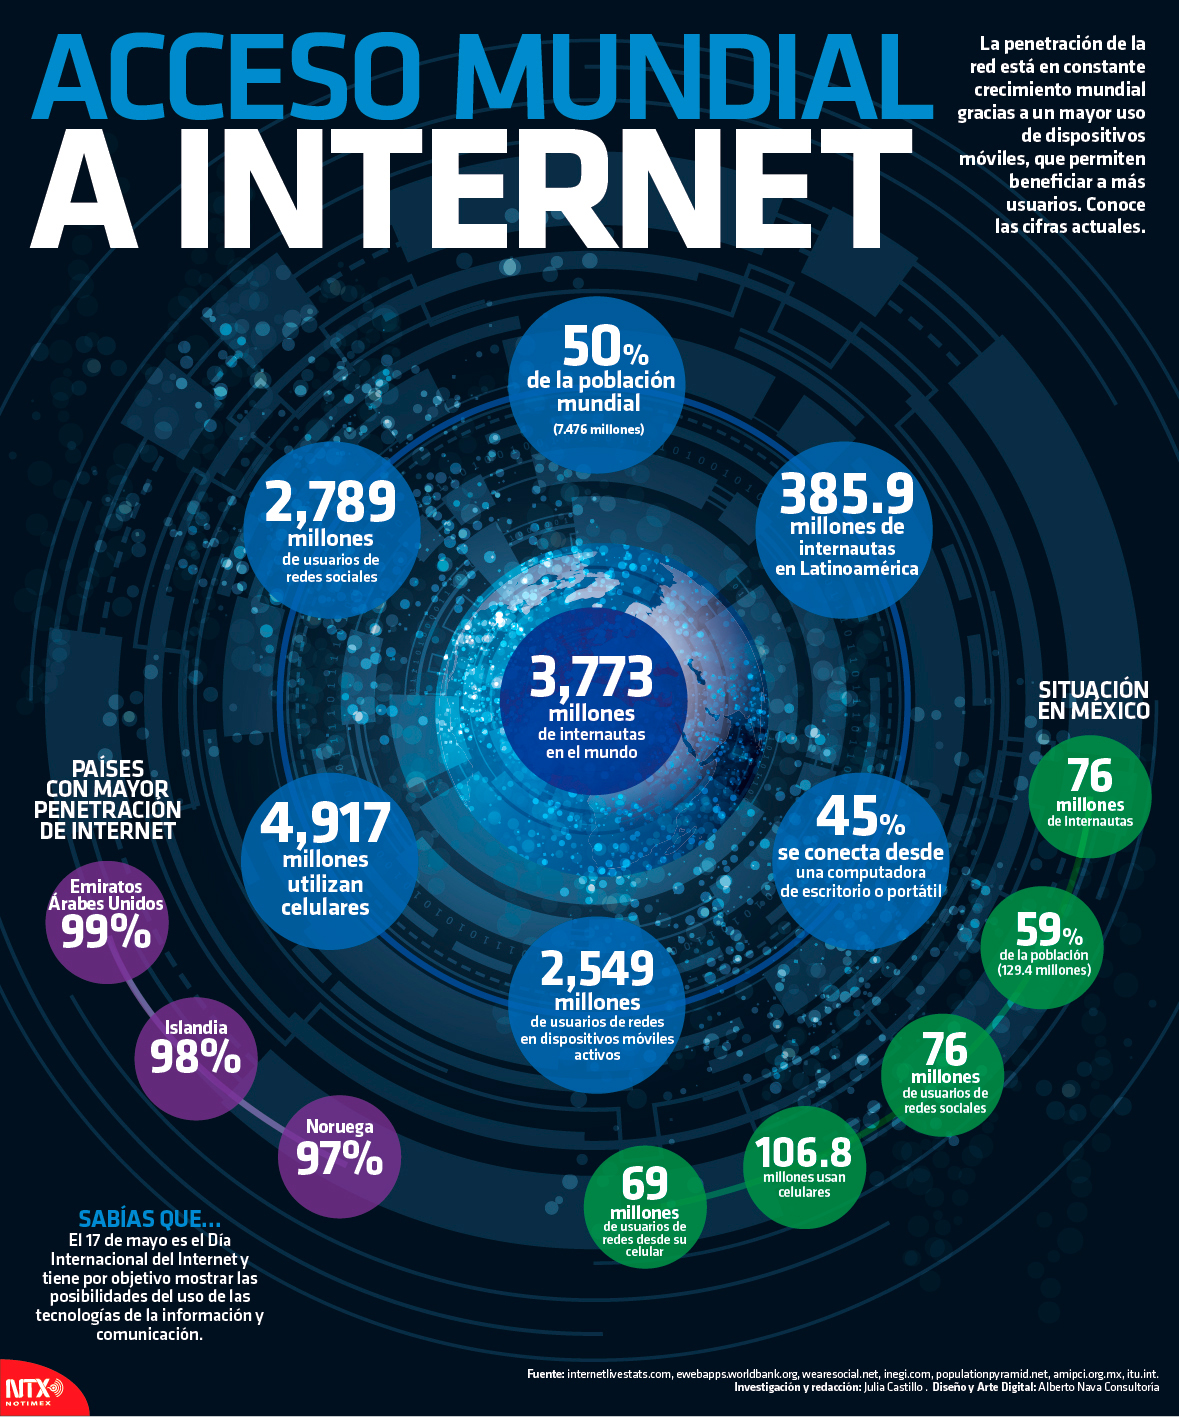 Acceso mundial a internet